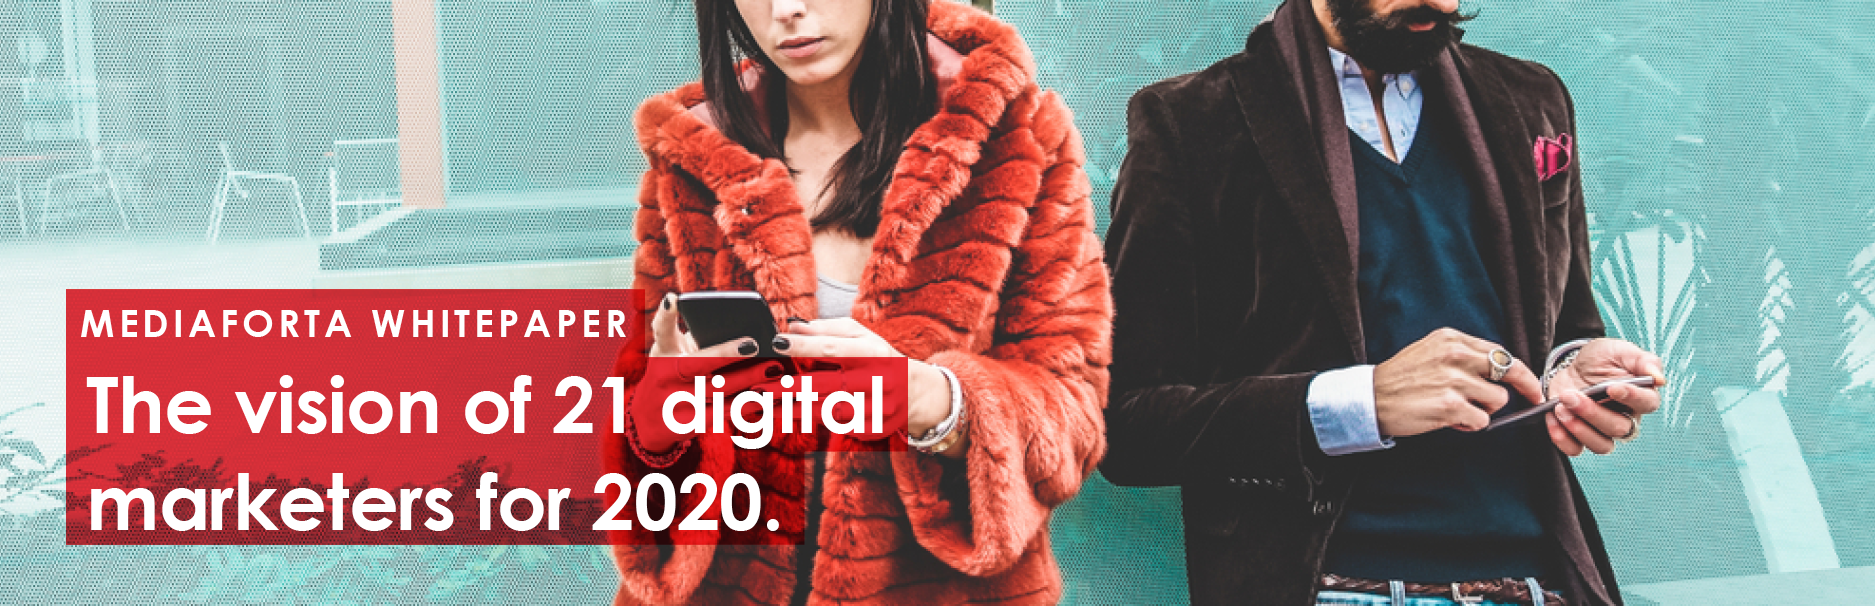 Visie 21 digital marketeers op 2020